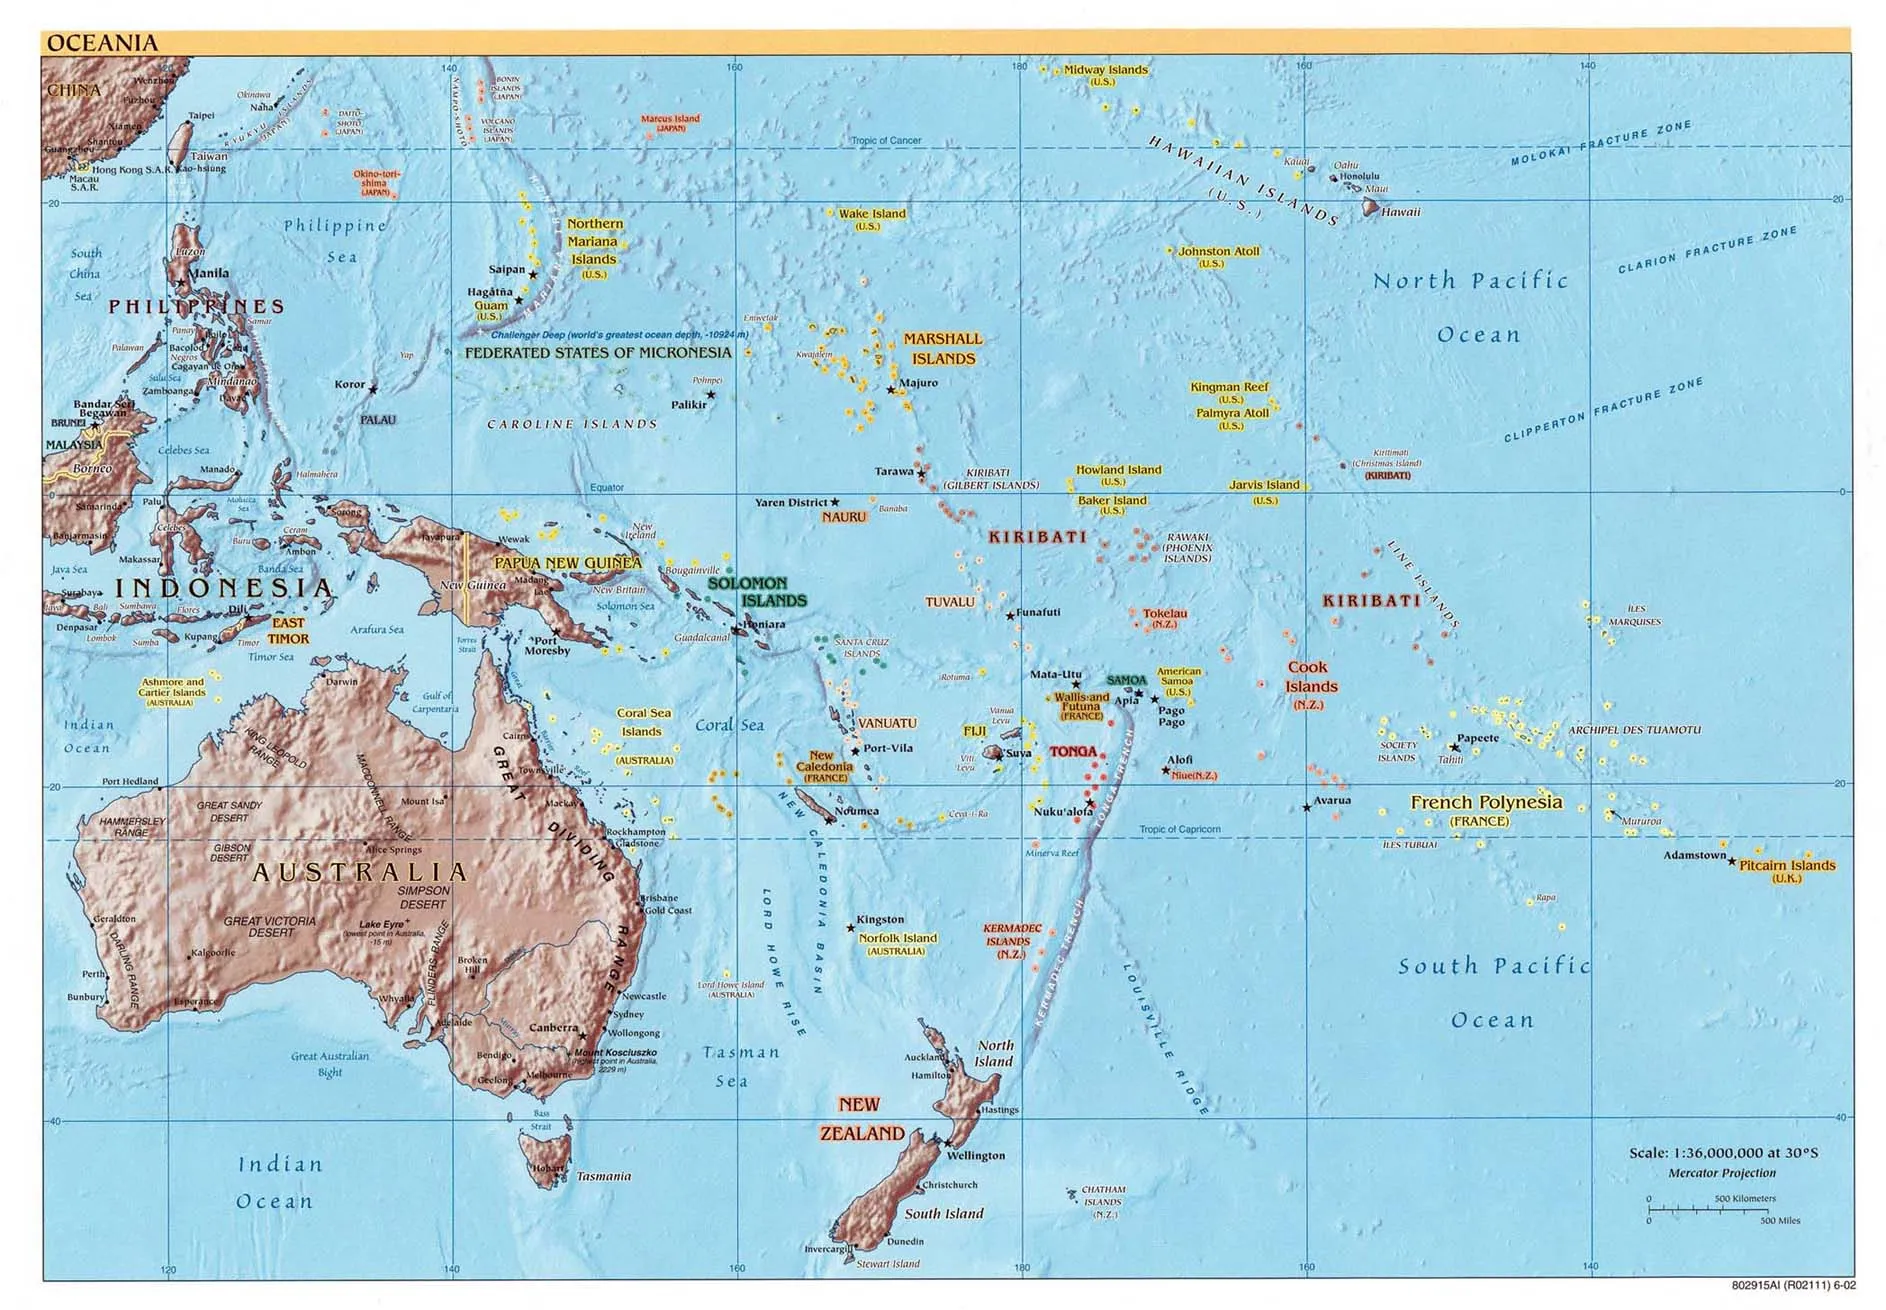 Mapa Físico de Oceanía 2002 - Tamaño completo